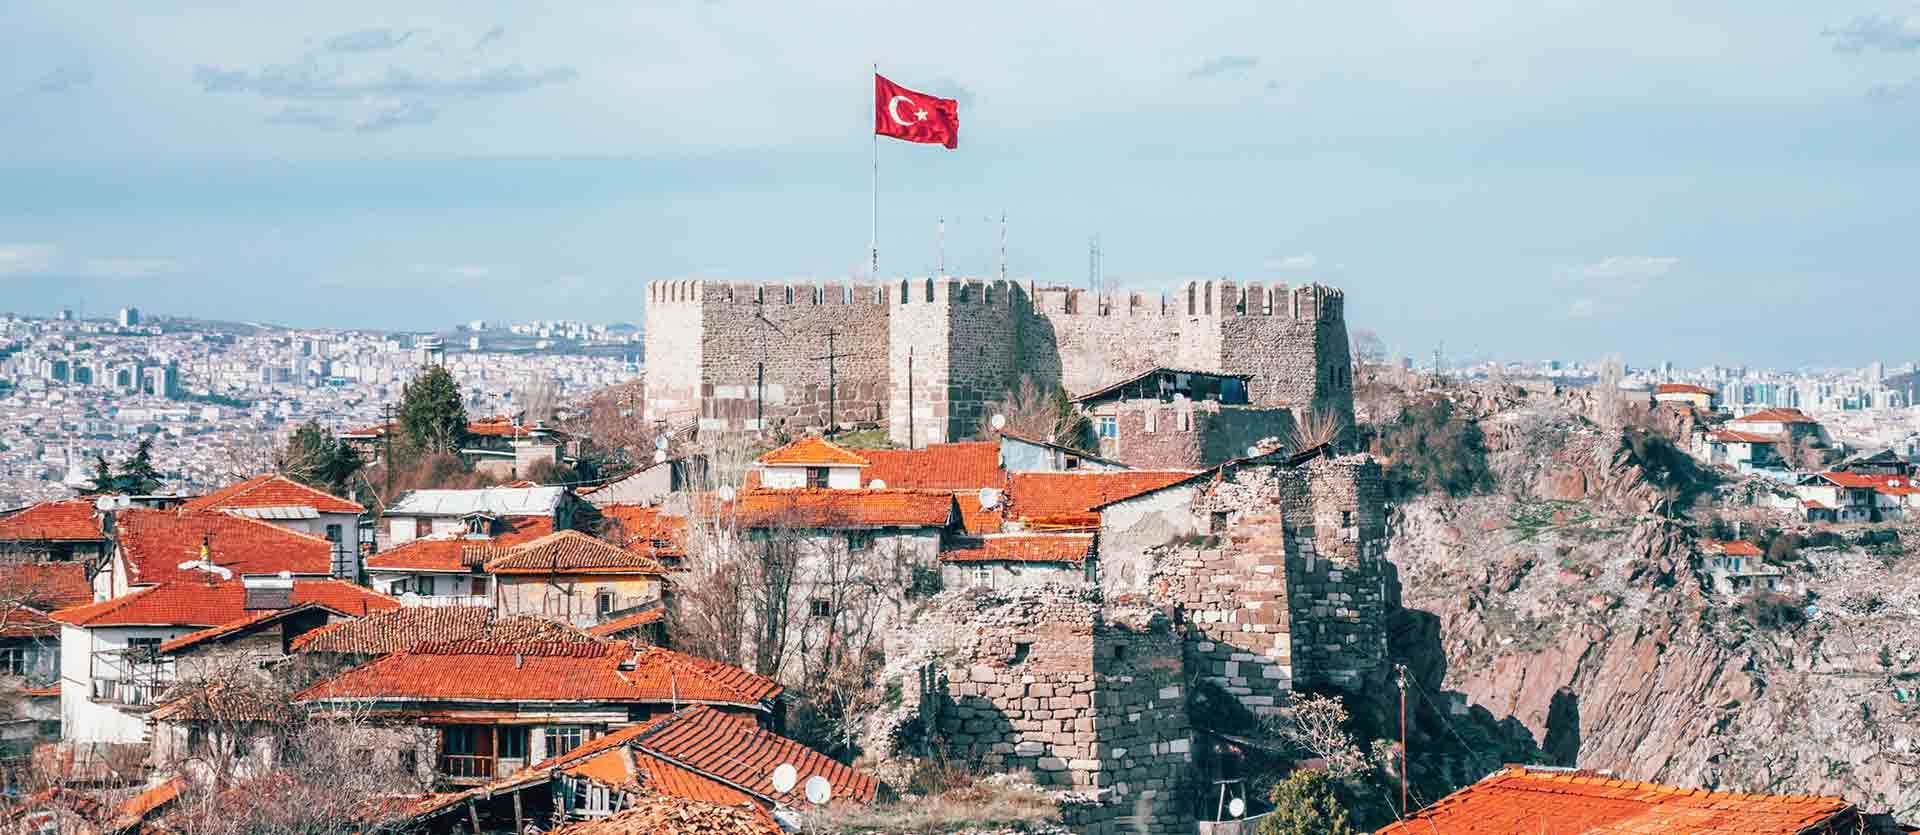 Ankara Castle <span class="iconos separador"></span> Turkey